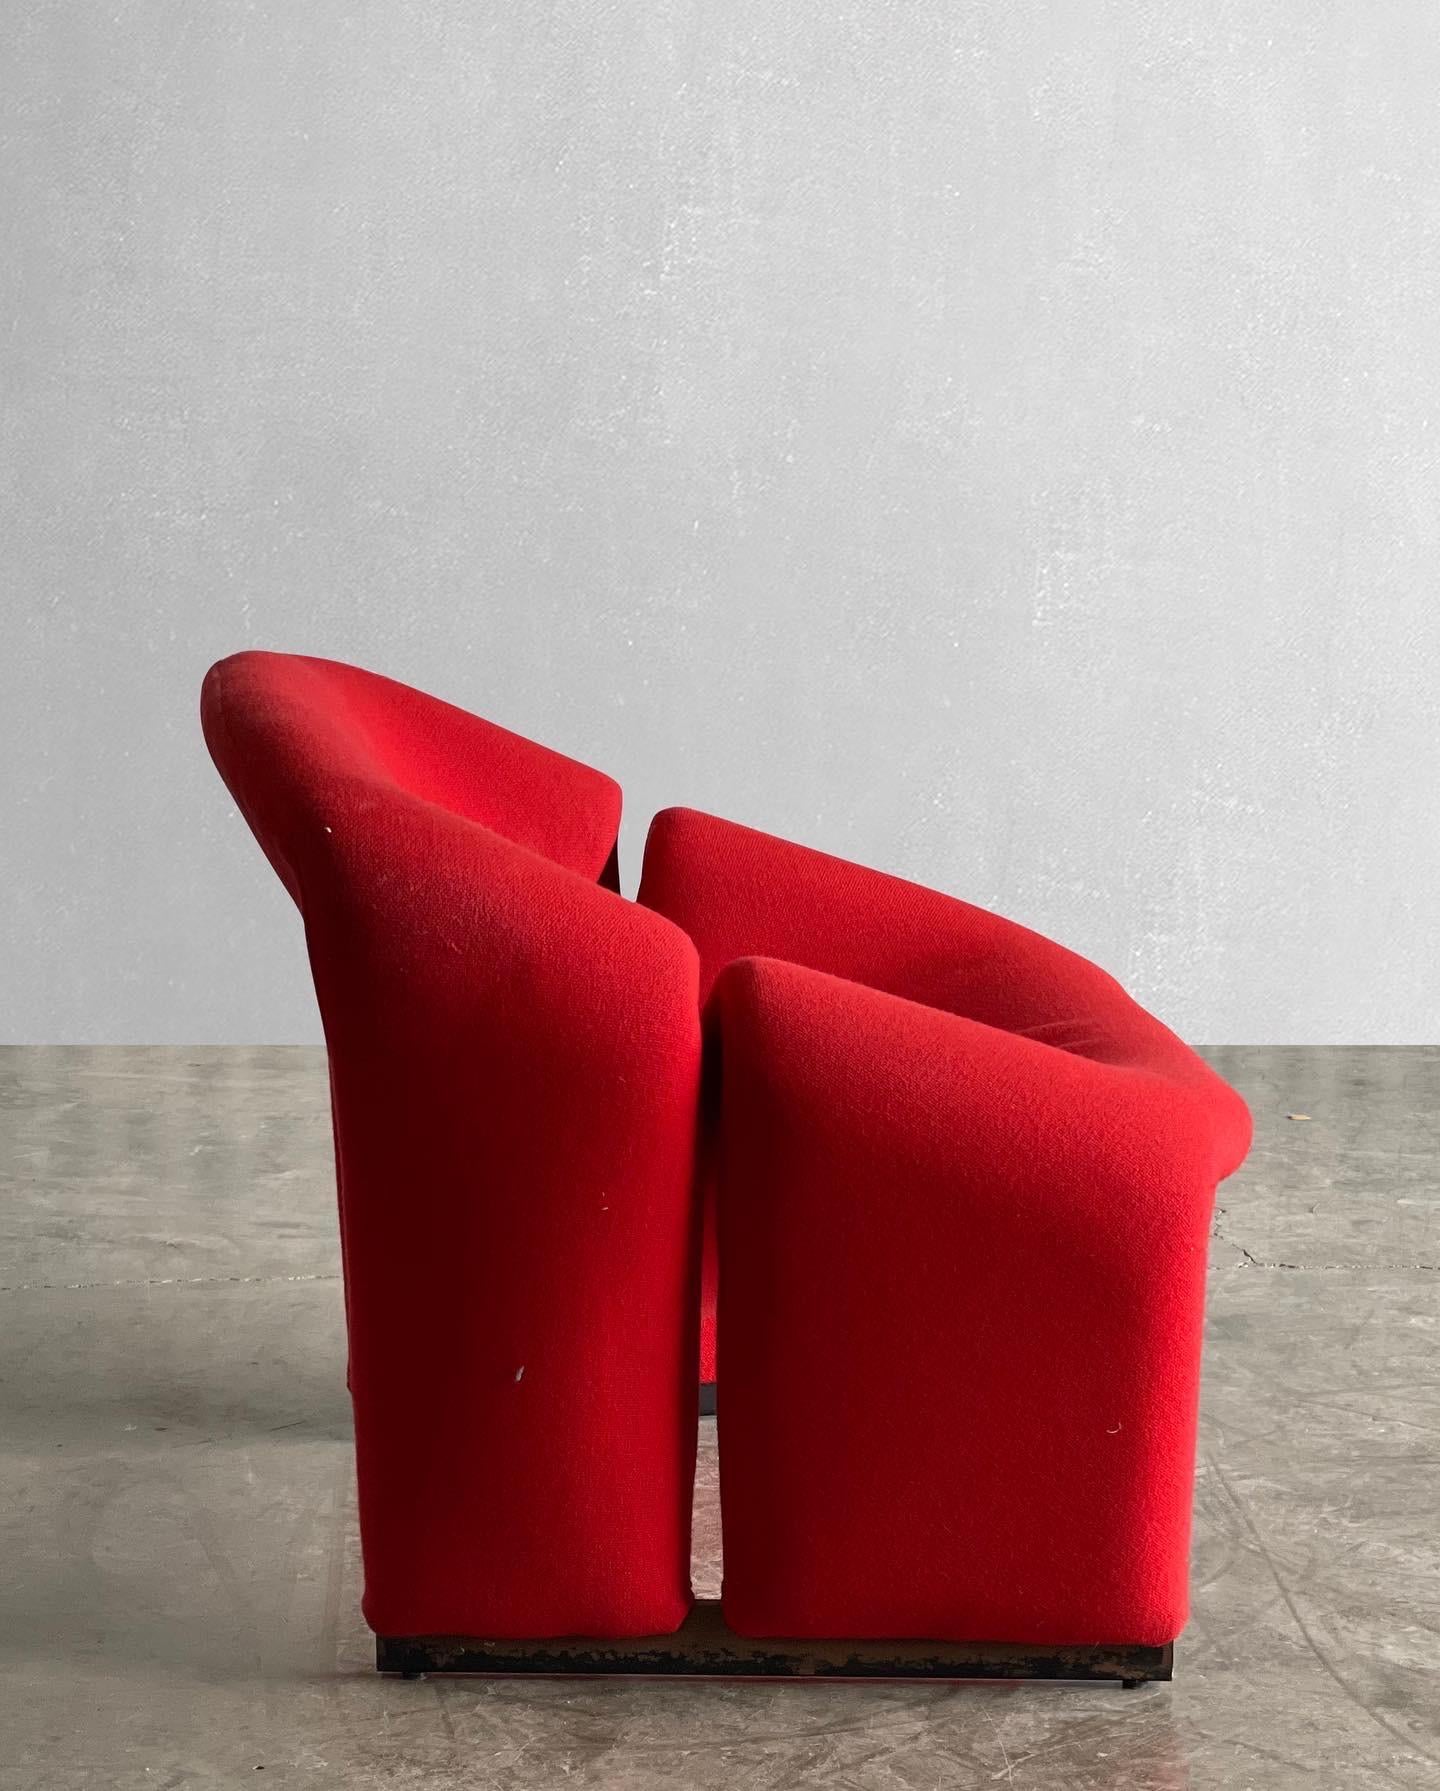 Les fauteuils groovy sont très emblématiques. Connus pour leur forme sculpturale, ils sont également très confortables. Disponible, nous avons une paire de chaises Groovy 1ère édition, conçues par Pierre Paulin pour Artifort en 1966.

La première